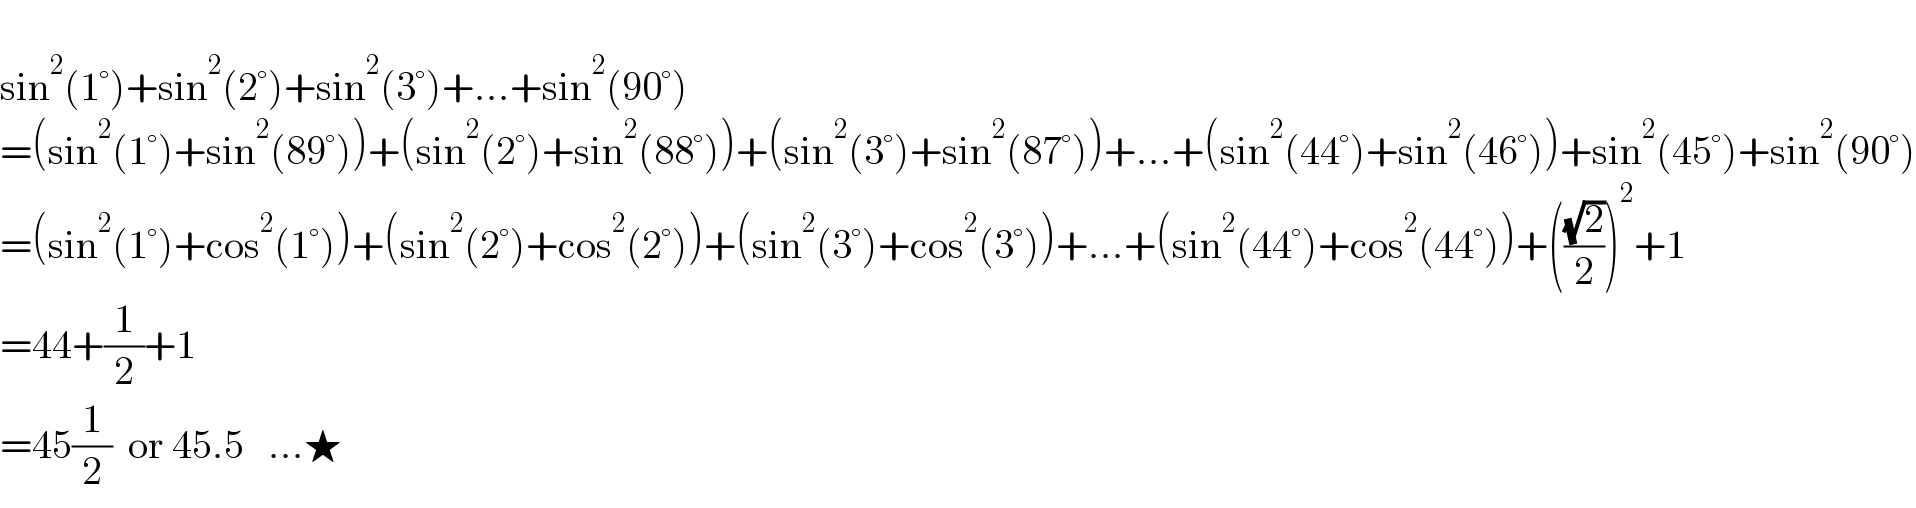   sin^2 (1°)+sin^2 (2°)+sin^2 (3°)+...+sin^2 (90°)  =(sin^2 (1°)+sin^2 (89°))+(sin^2 (2°)+sin^2 (88°))+(sin^2 (3°)+sin^2 (87°))+...+(sin^2 (44°)+sin^2 (46°))+sin^2 (45°)+sin^2 (90°)  =(sin^2 (1°)+cos^2 (1°))+(sin^2 (2°)+cos^2 (2°))+(sin^2 (3°)+cos^2 (3°))+...+(sin^2 (44°)+cos^2 (44°))+(((√2)/2))^2 +1  =44+(1/2)+1  =45(1/2)  or 45.5   ...★  